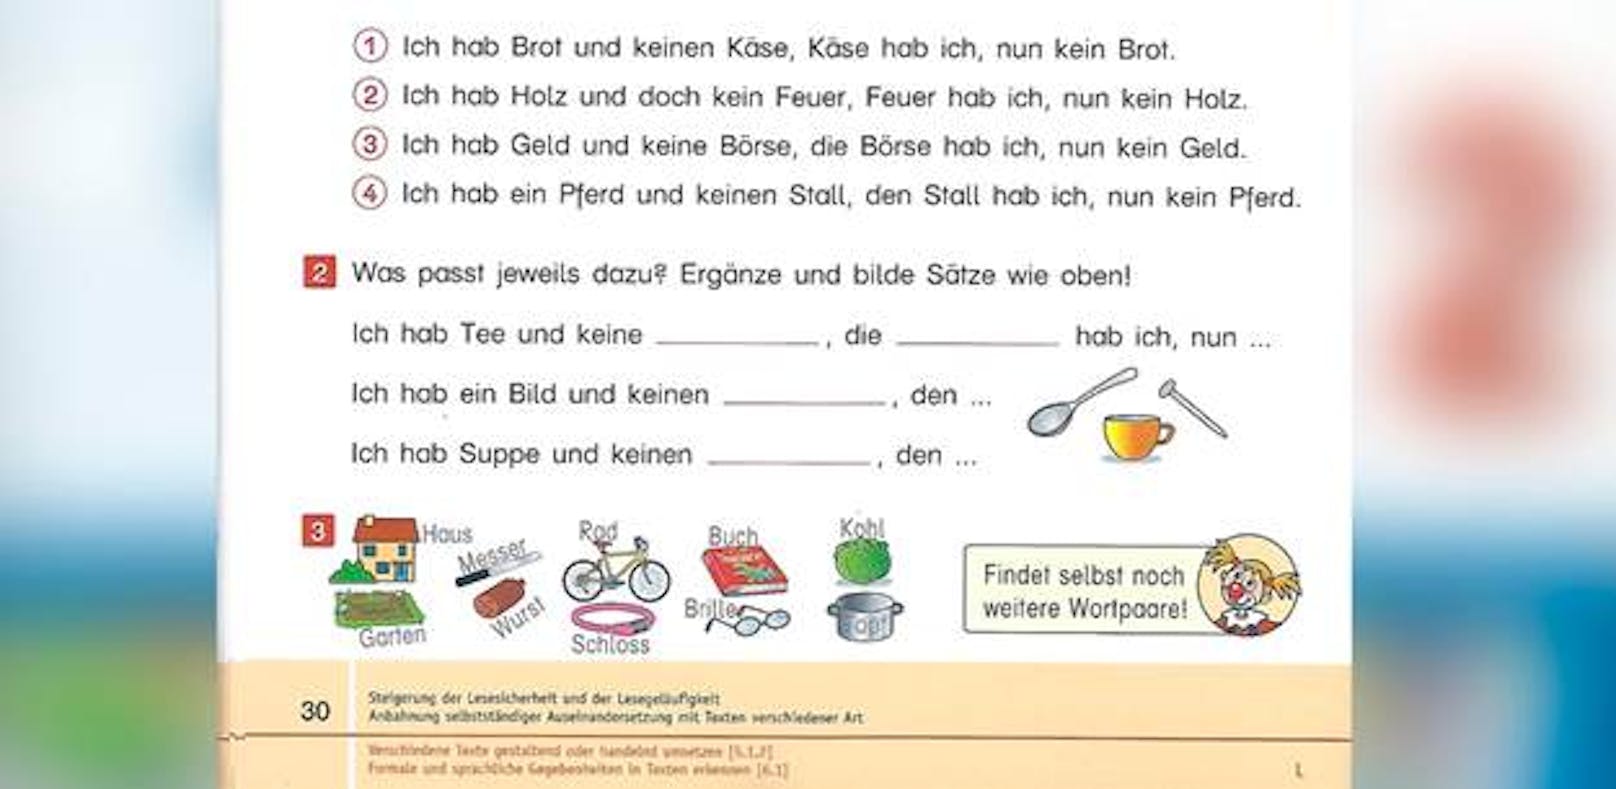 Mit diesem Schulbuch soll die deutsche Sprache vermittelt werden. 